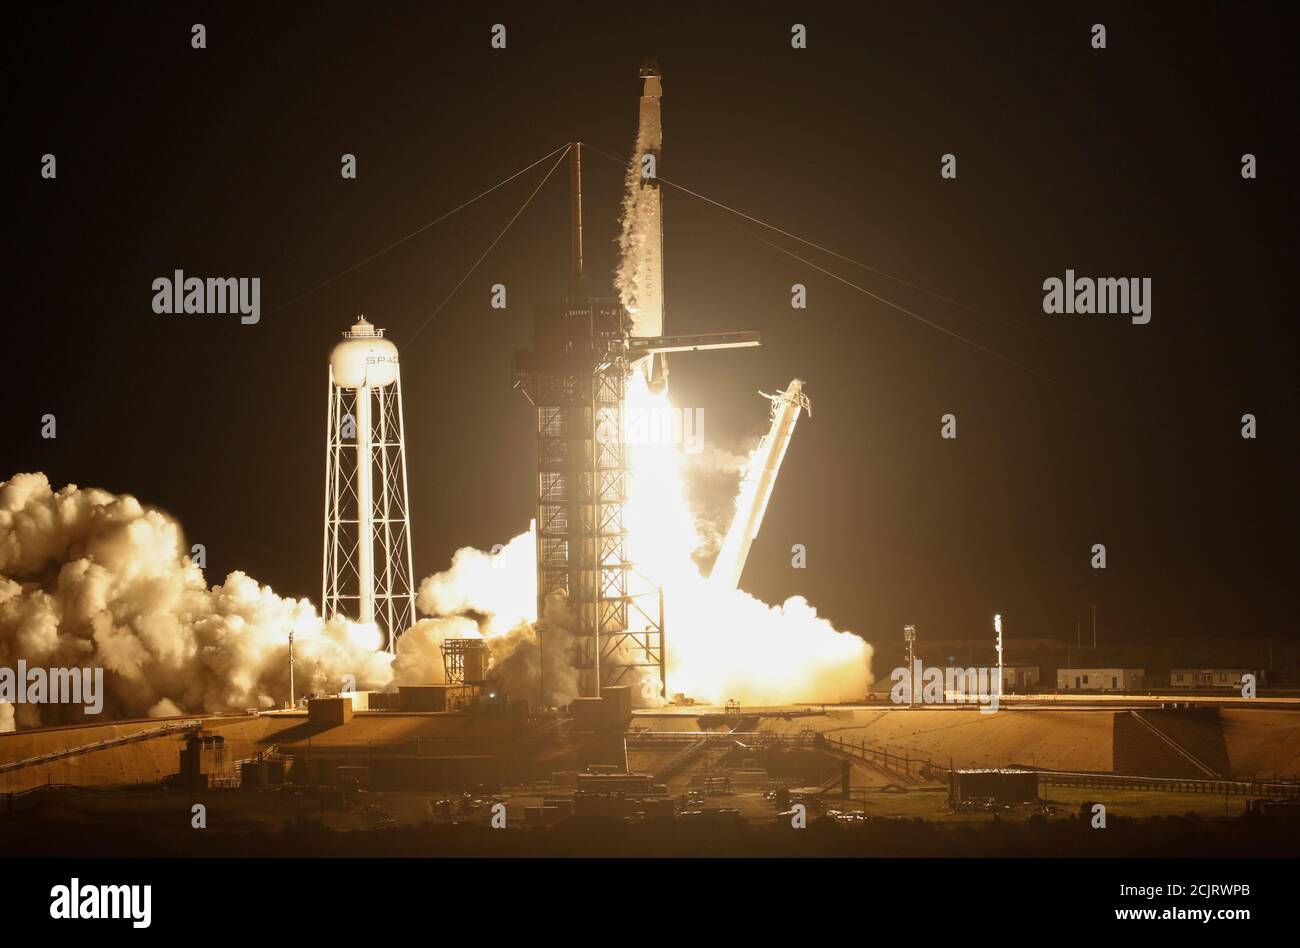 Un razzo SpaceX Falcon 9, che trasporta la navicella spaziale Crew Dragon, si innalza su un volo di prova senza equipaggio fino alla Stazione spaziale Internazionale dal Kennedy Space Center a Cape Canaveral, Florida, Stati Uniti, 2 marzo 2019. REUTERS/Mike Blake Foto Stock